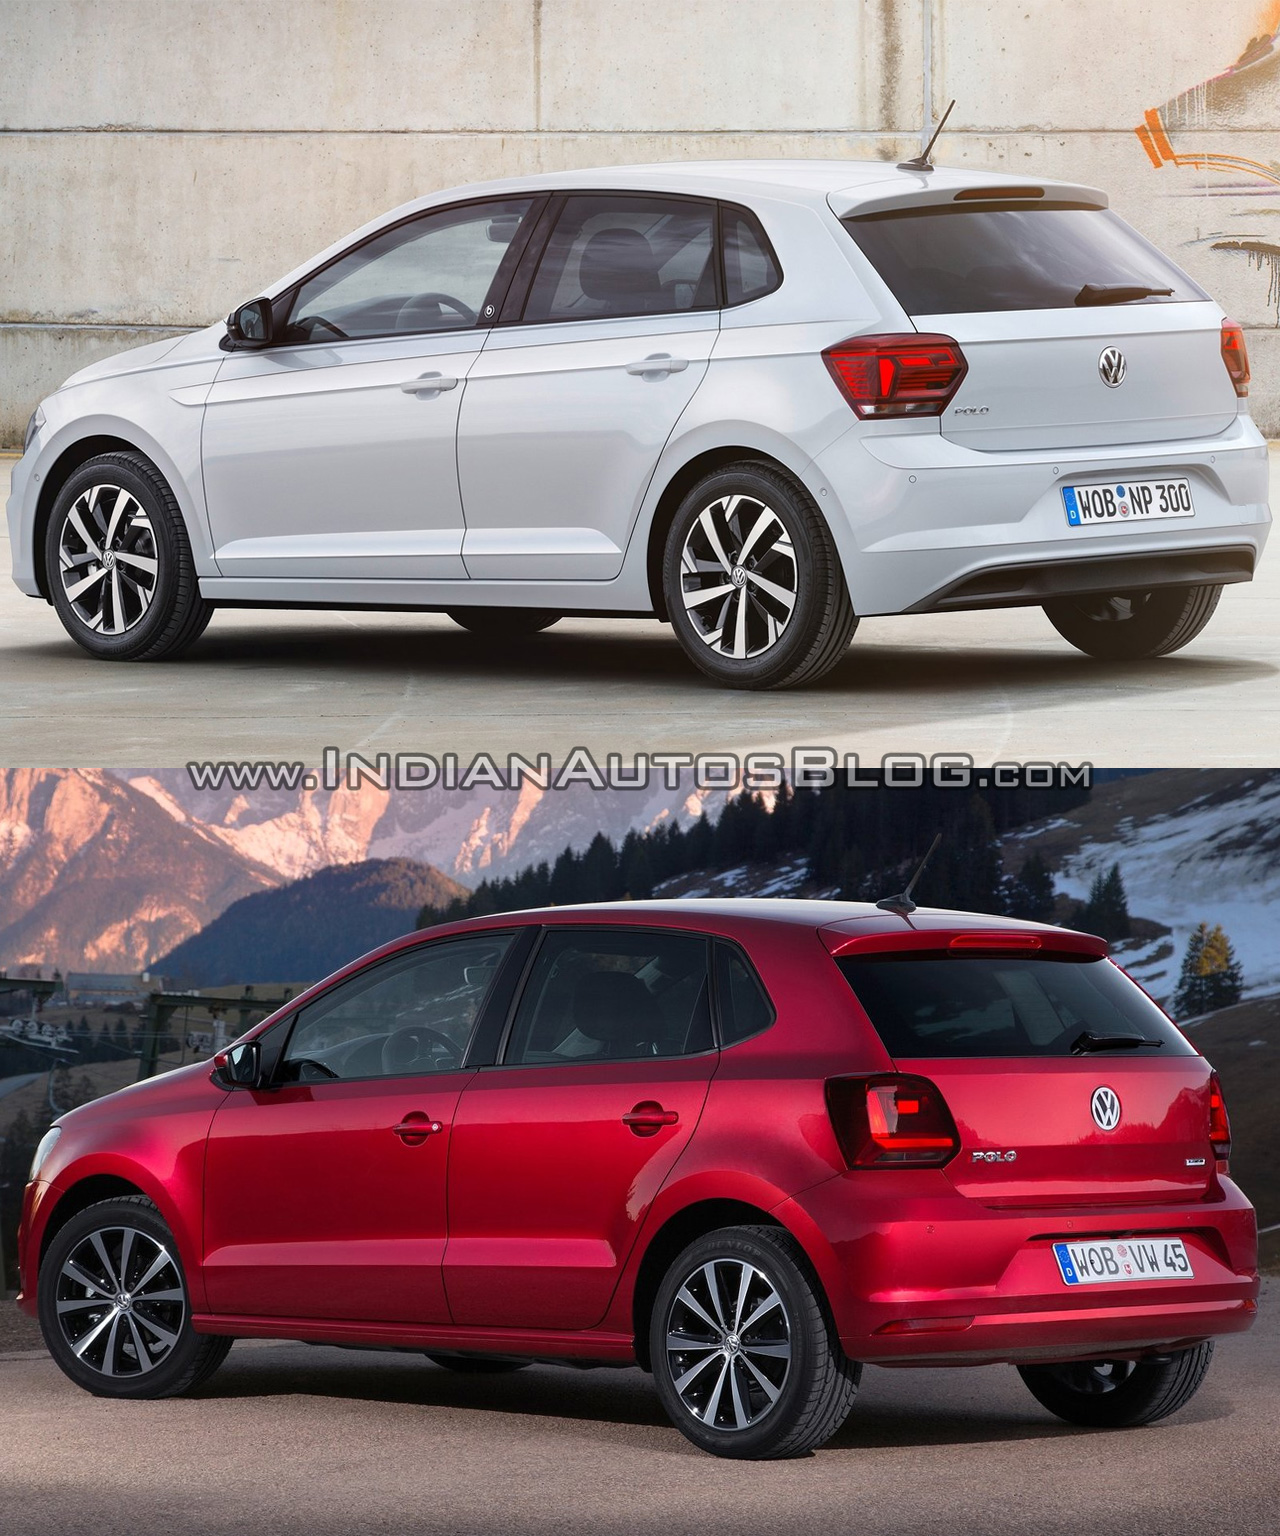 2017 VW Polo vs. 2014 VW Polo - Old vs. New